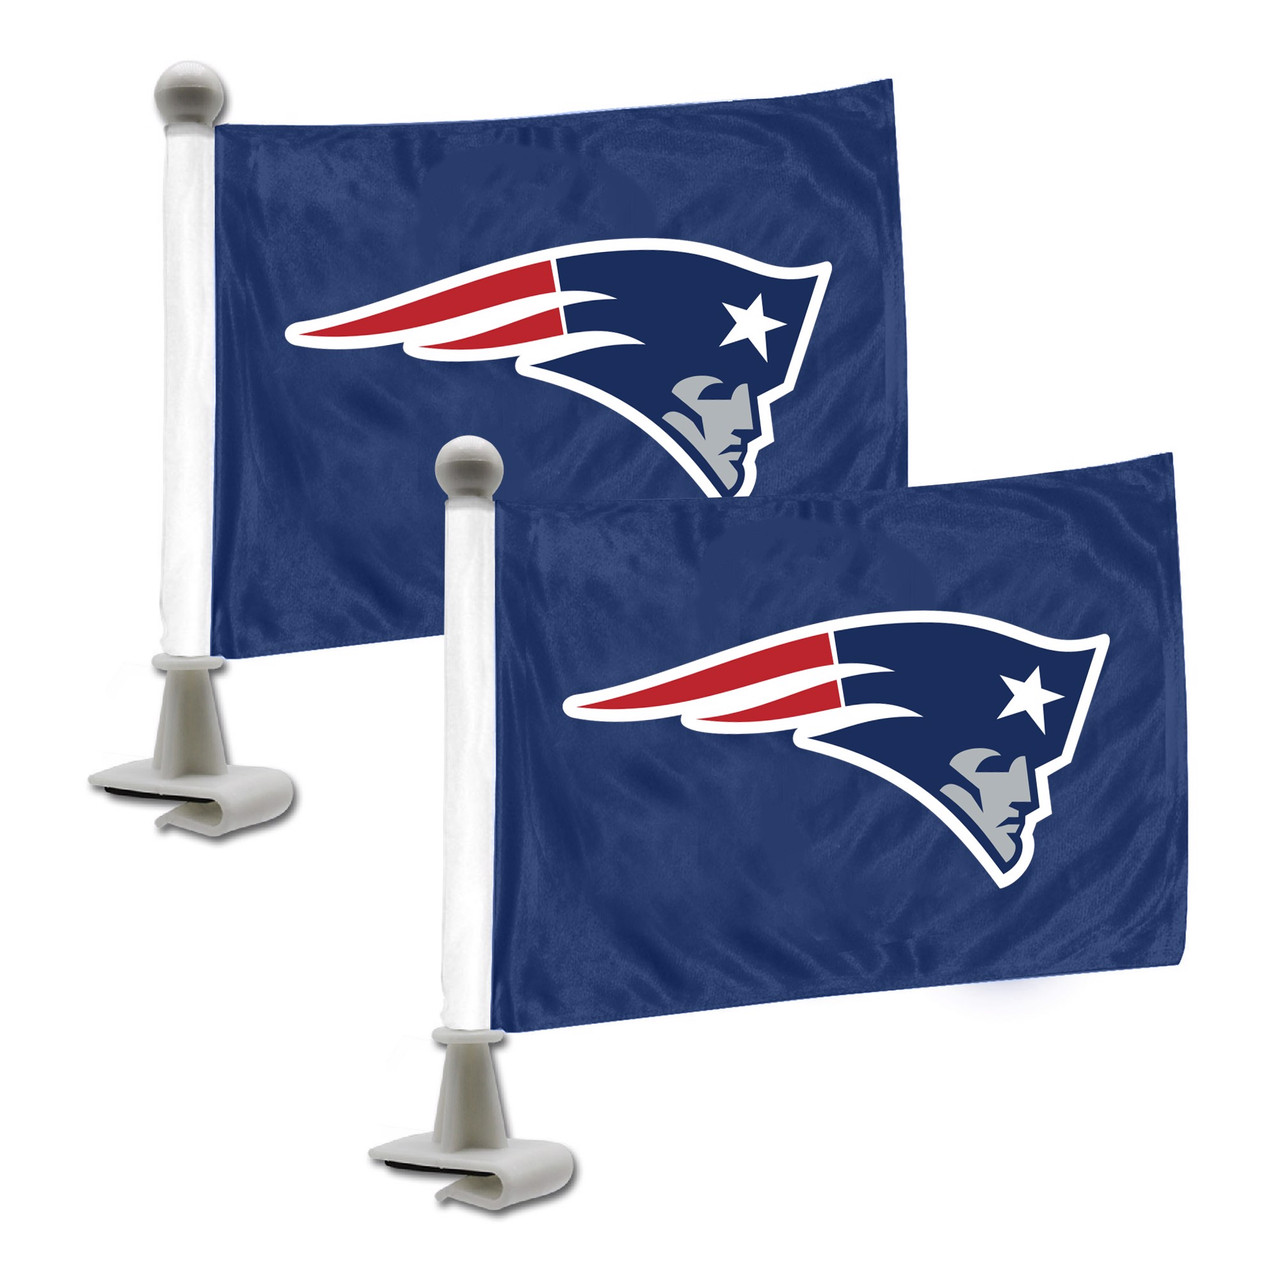 Set of 2 NFL New England Patriots Ambassador Car Flags 6' x 4